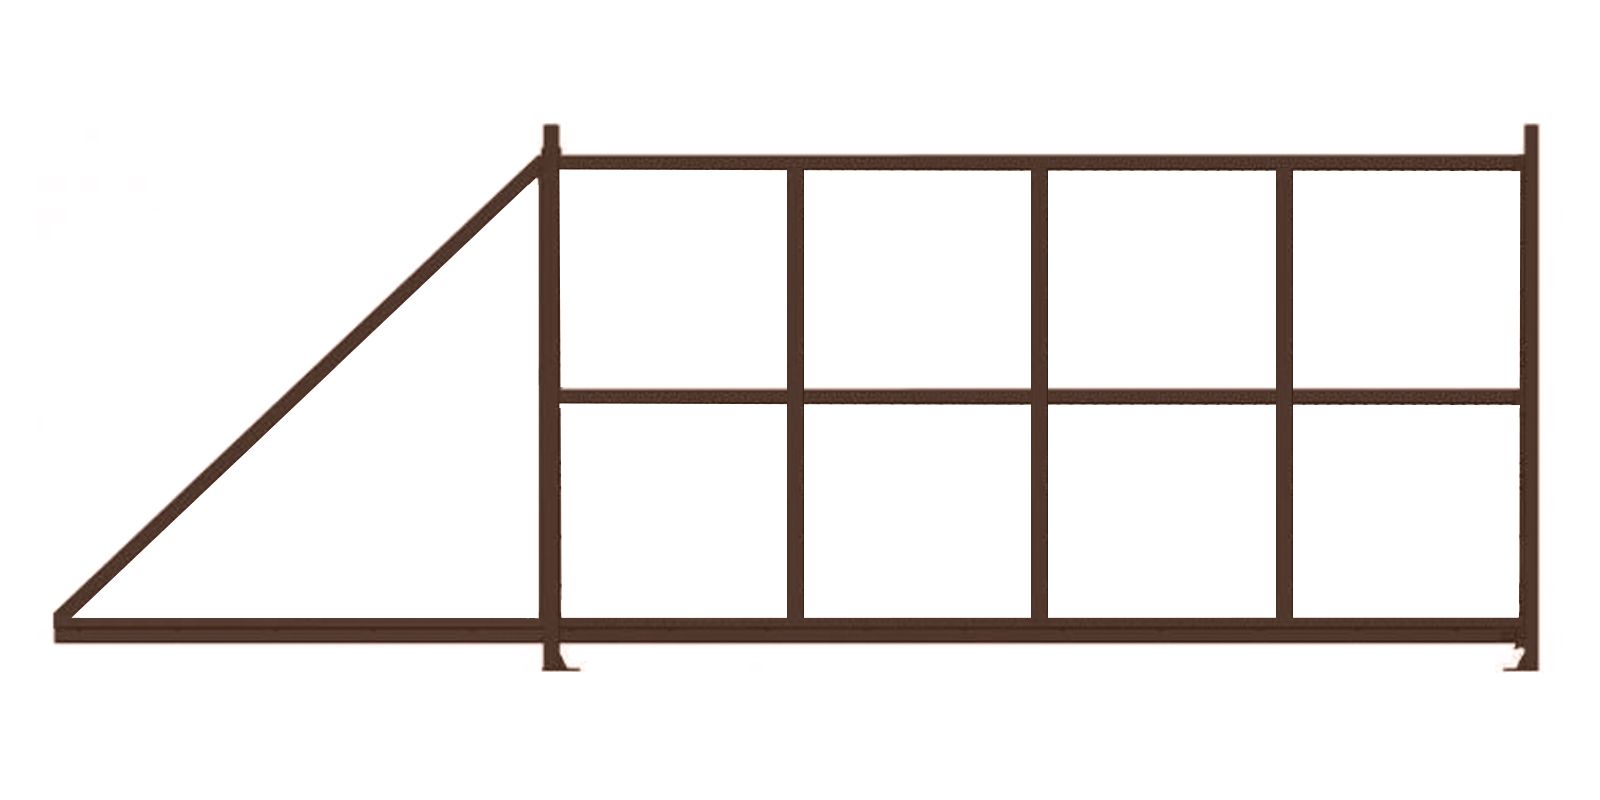 Купить Откатные ворота стандартные шириной 4,00 м в комплектации Базовая + комплект фурнитуры